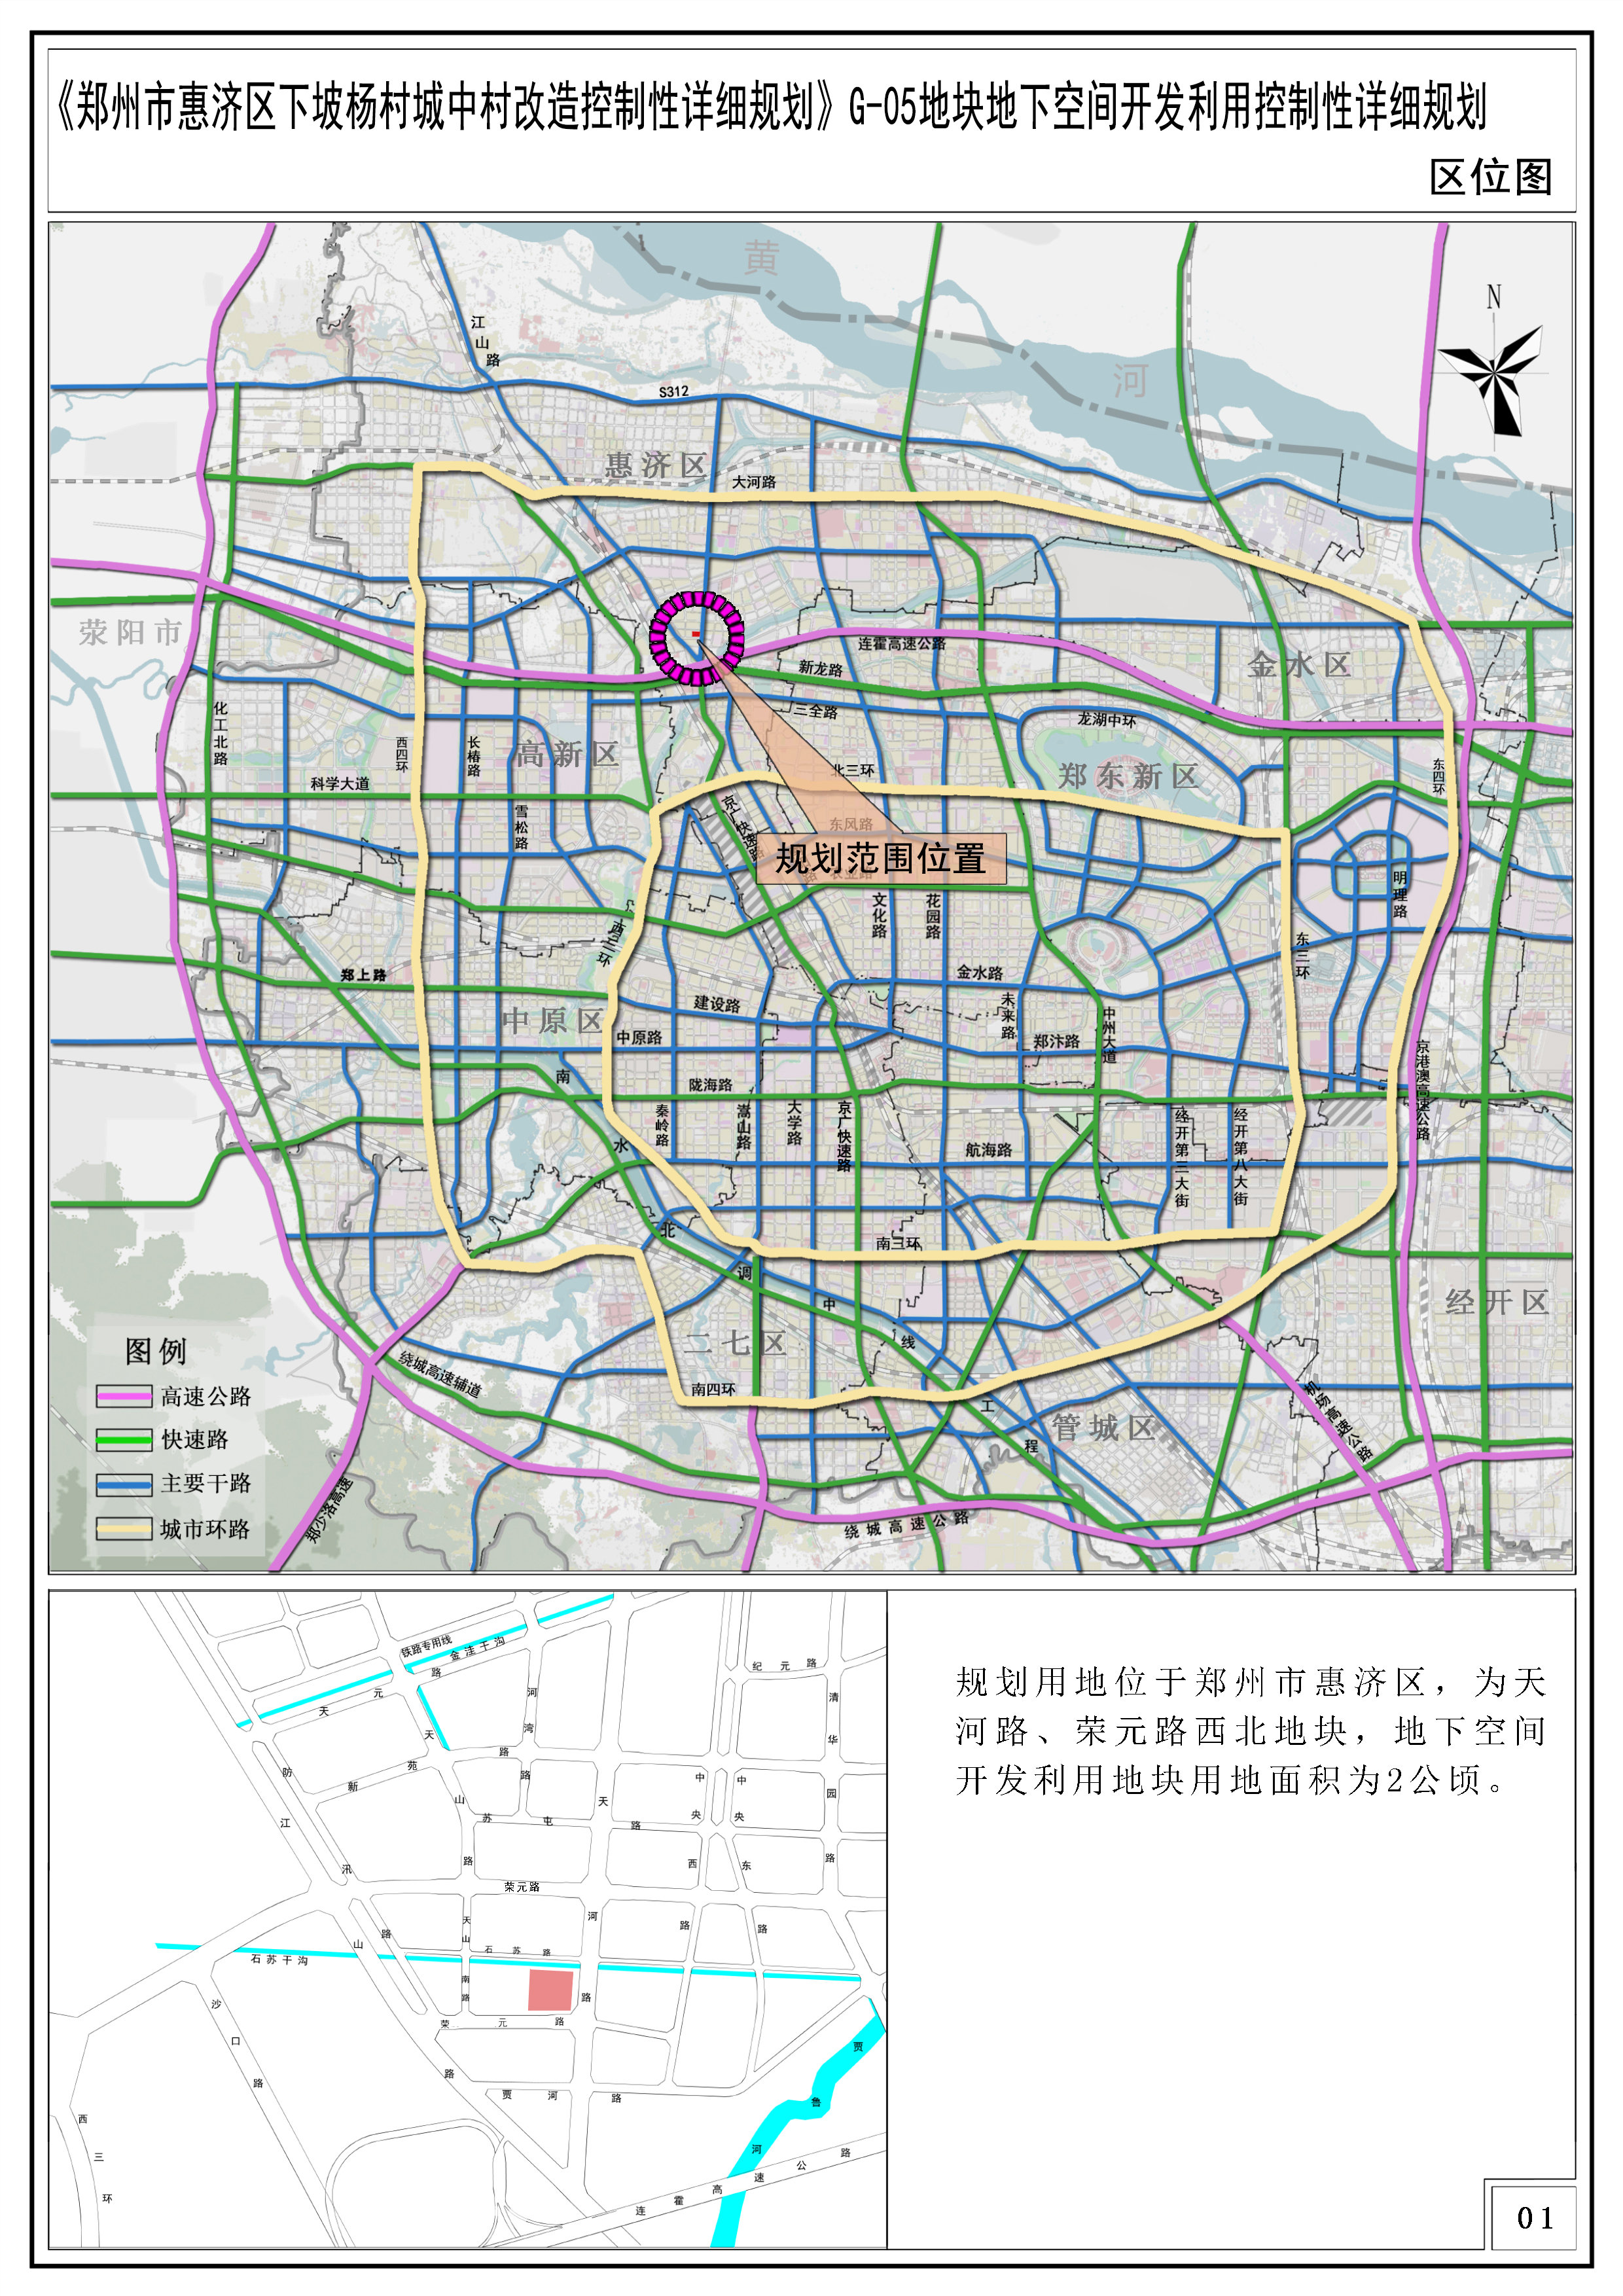 《郑州市惠济区下坡杨村城中村改造控制性详细规划》G-05地块地下空间开发利用控制性详细规划